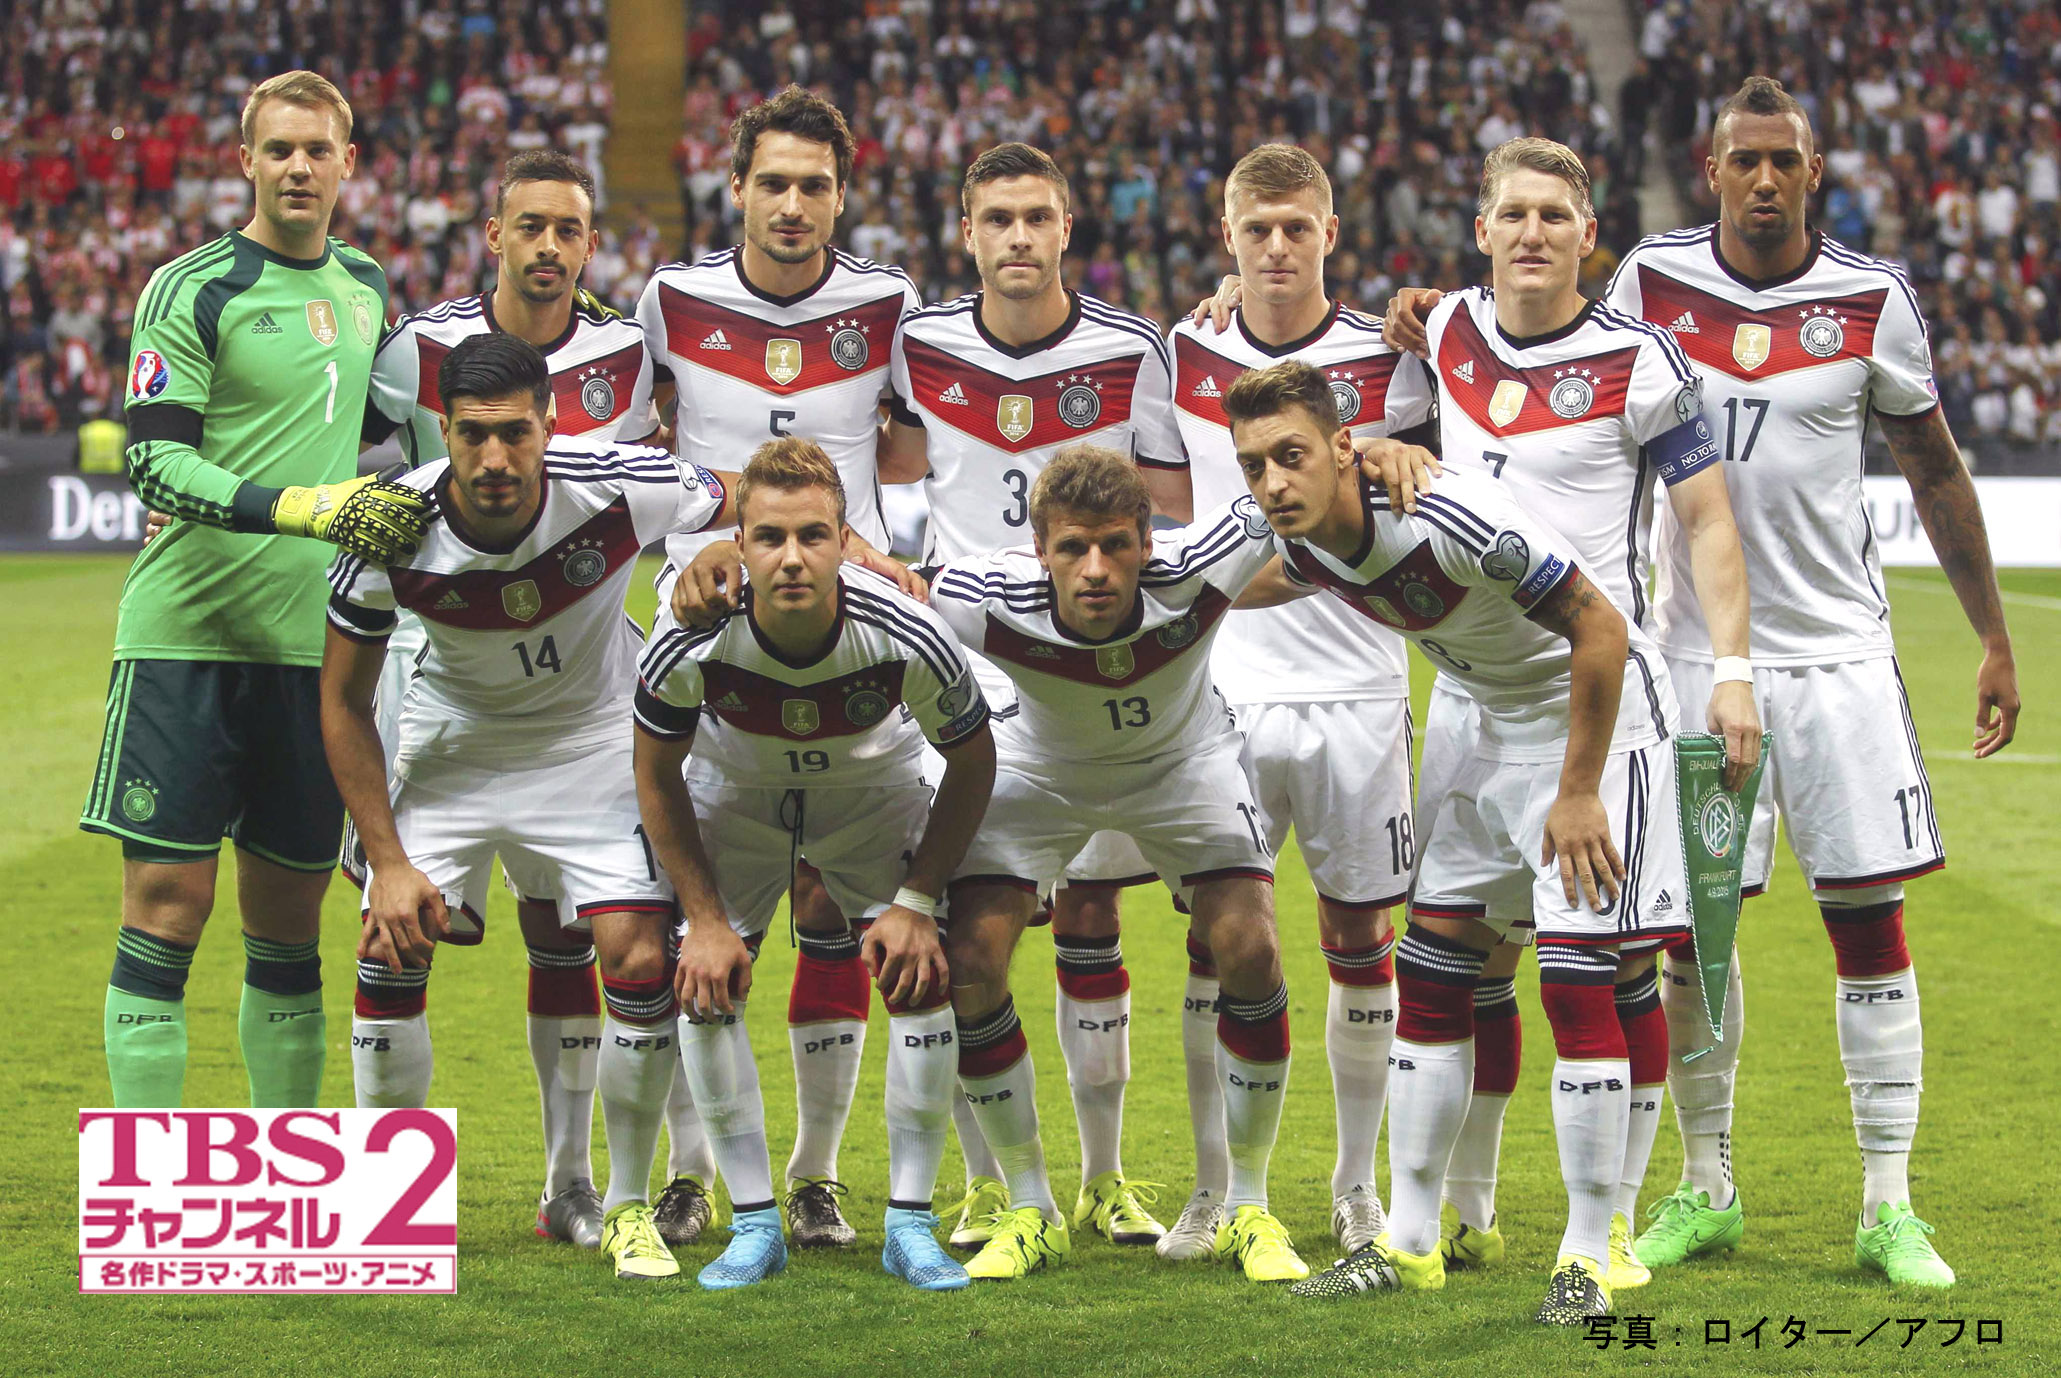 サッカー ドイツ代表の国際試合2試合をcs放送 Tbsチャンネル2 で独占生中継 11 14 土 フランスvsドイツ 11 18 水 ドイツvsオランダ 株式会社tbsテレビのプレスリリース